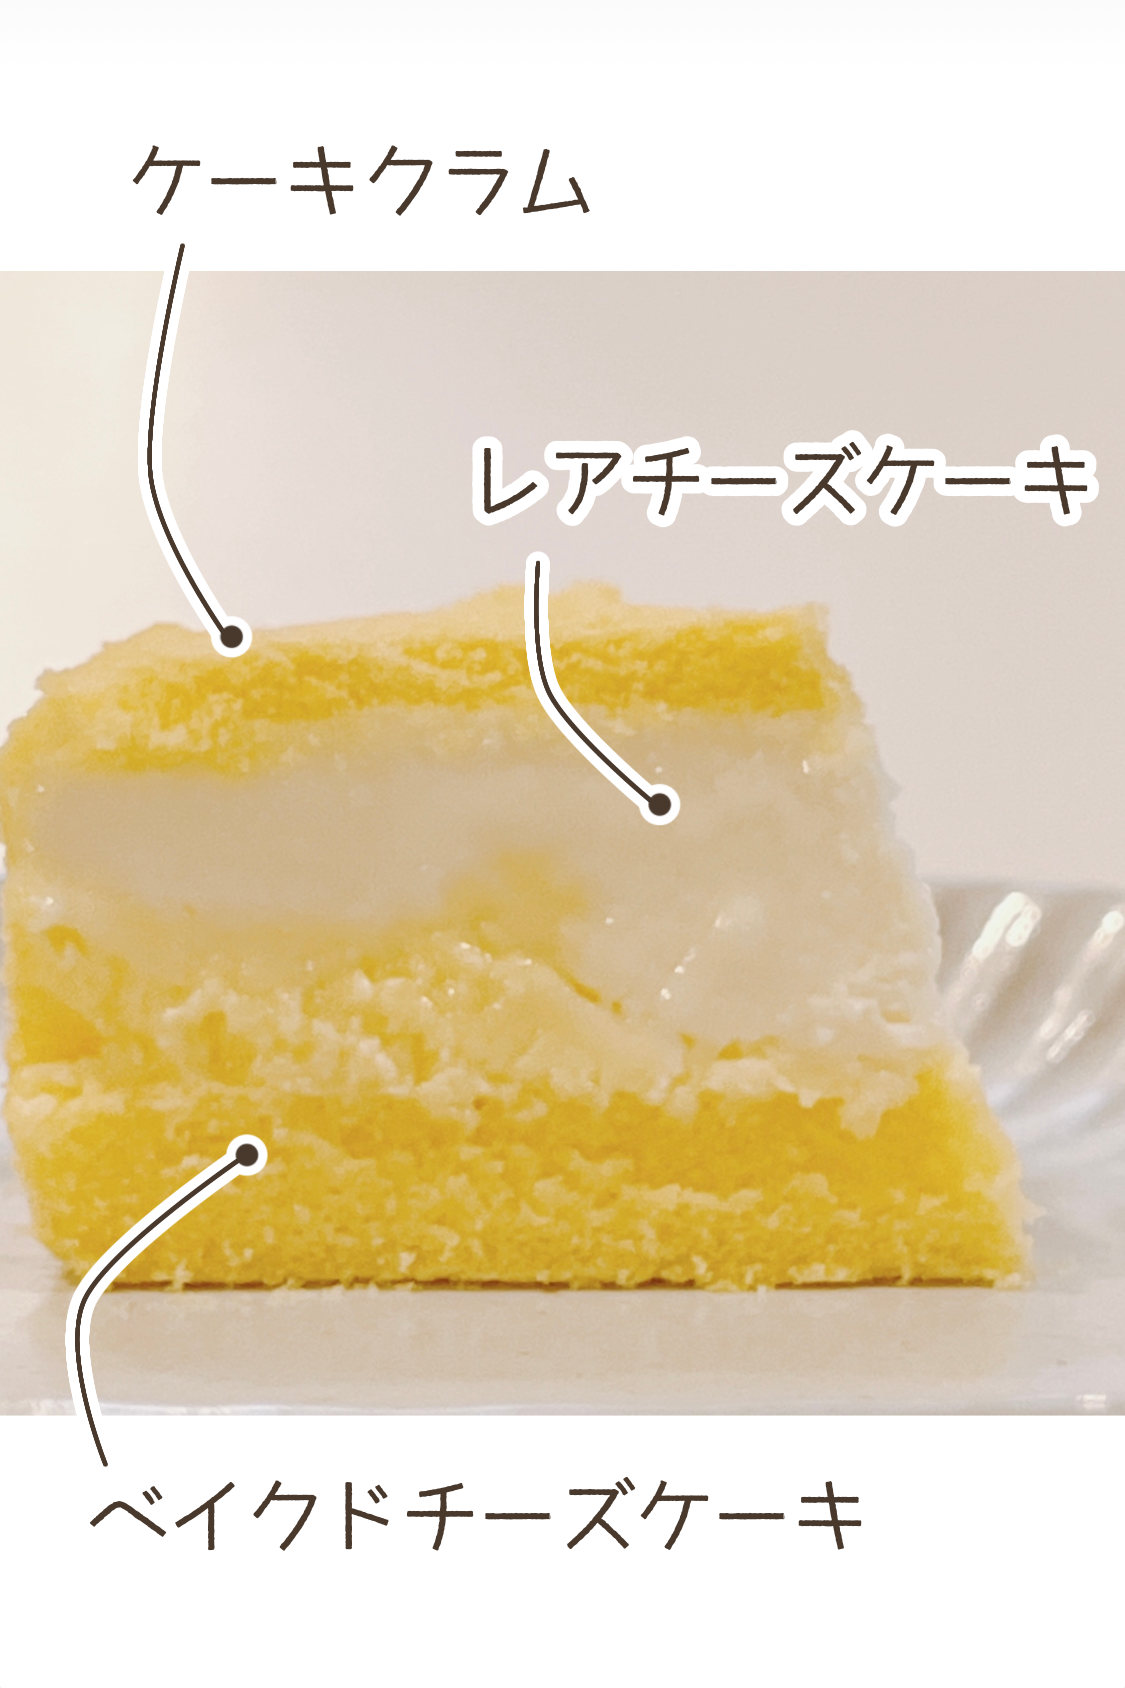 業務スーパーのオススメの商品「ダブルチーズケーキ」